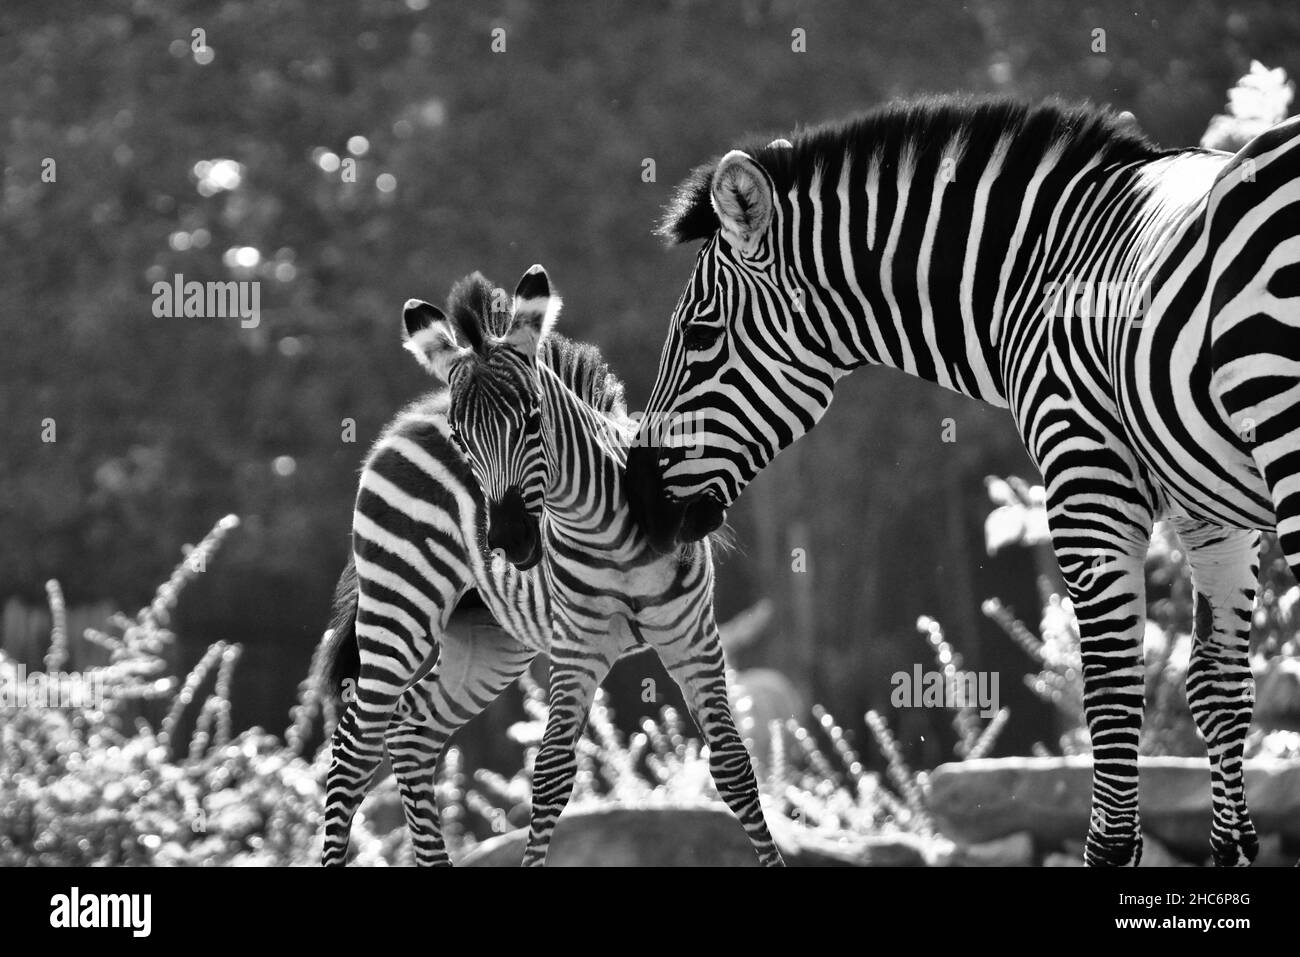 Scatto in scala di grigi di una zebra madre e la sua prole in un parco Foto Stock